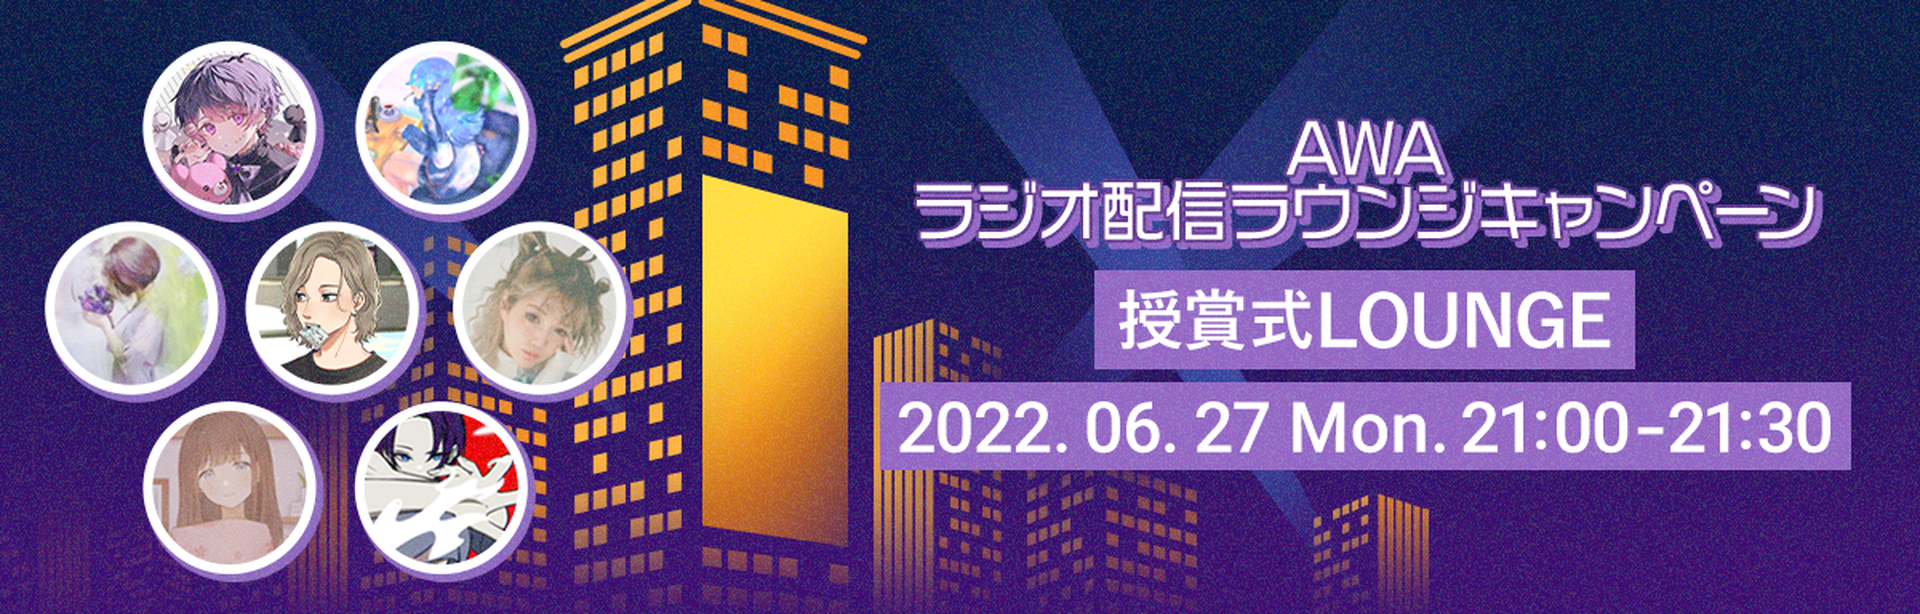 【#AWAビジョン争奪CP】授賞式ラウンジ 2022年6月27日 月曜日 21:00～21:30開催